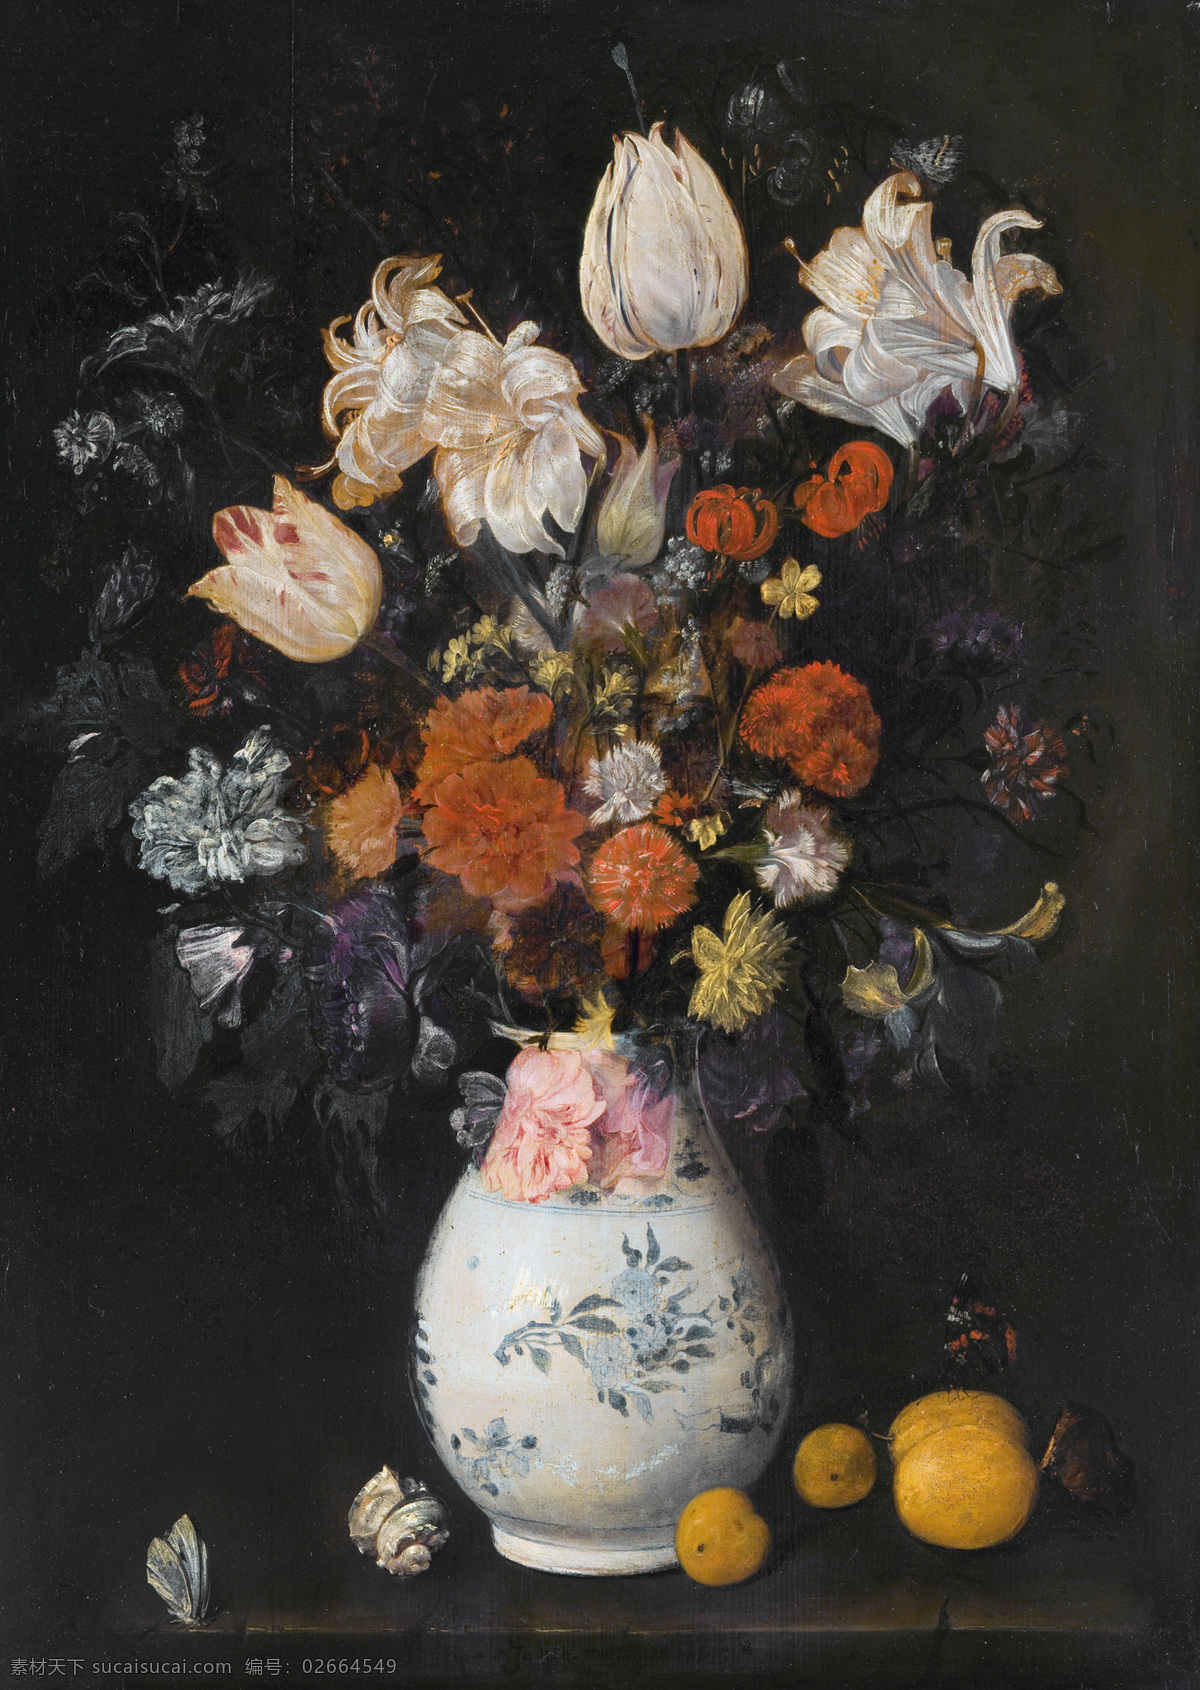 静物油画 朱迪思 莱斯特 作品 著名油画 油画 艺术 花瓶 花 水果 静物艺术 荷兰 黄金时代 绘画 荷兰画家 私人收藏 绘画书法 文化艺术